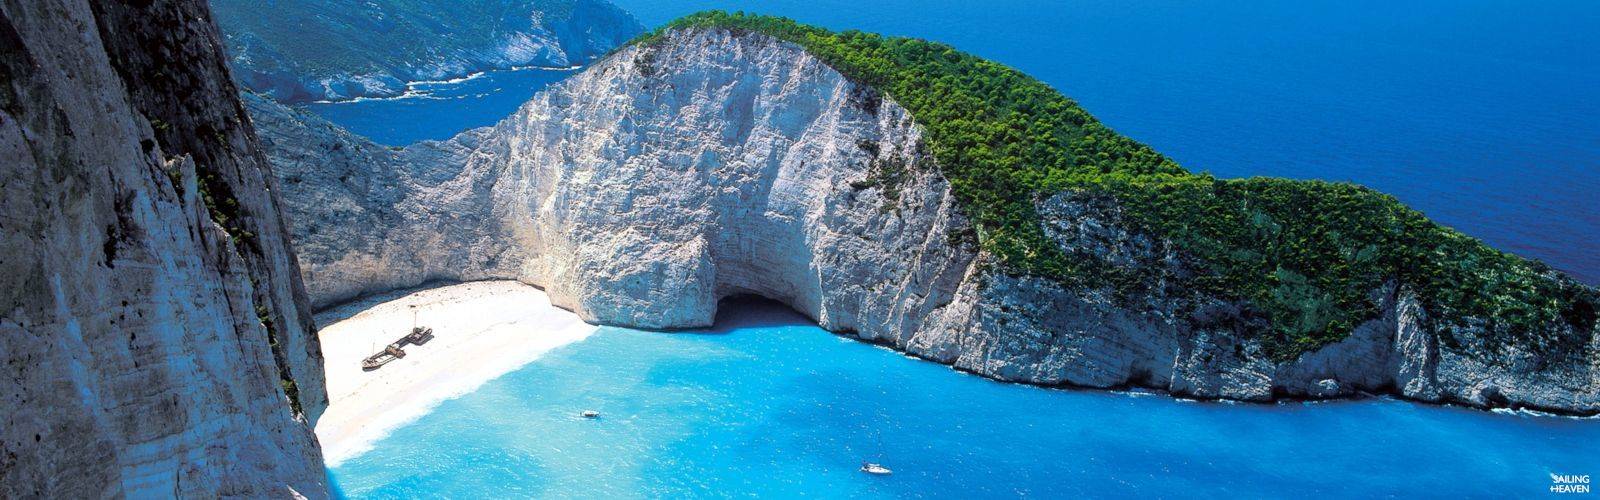 Affittare una barca a vela in Grecia e navigate sulle magiche strade acquatiche dei mari Egeo e Ionio